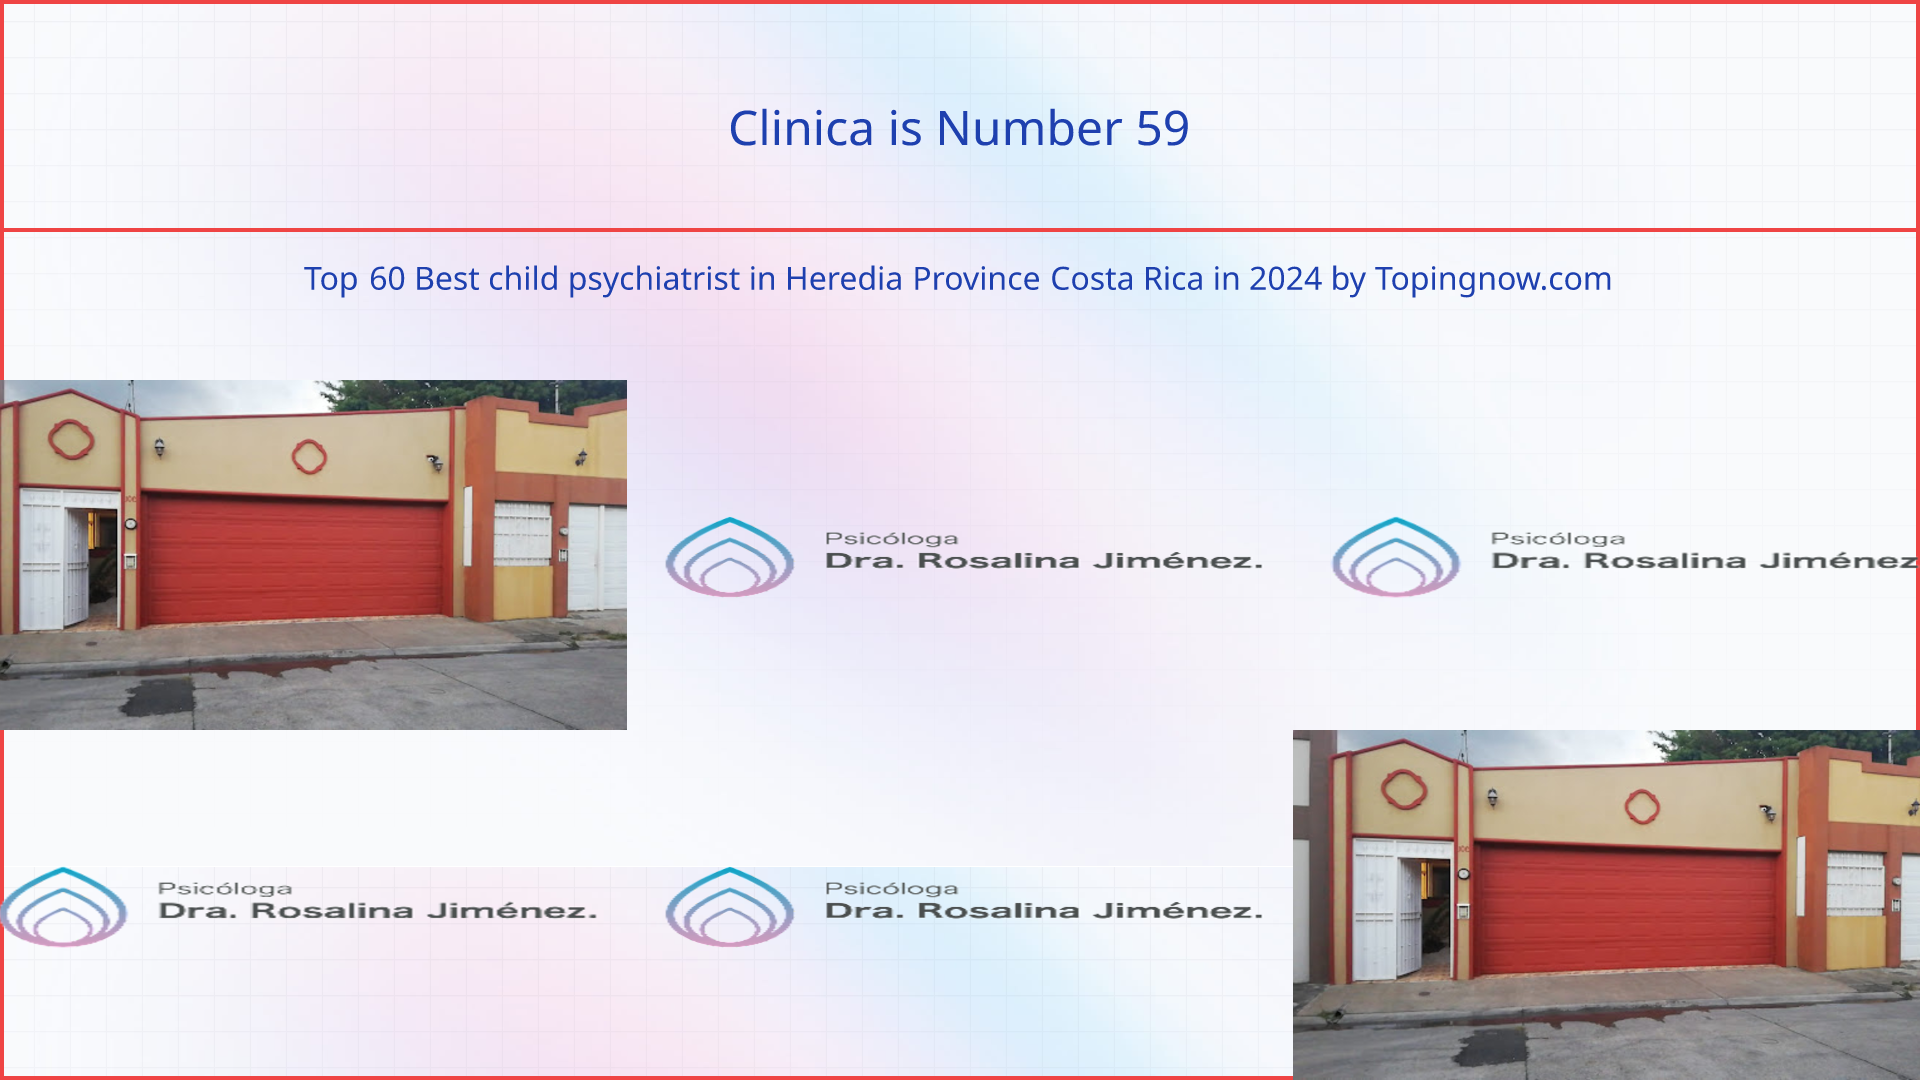 Clinica: Top 60 Best child psychiatrist in Heredia Province Costa Rica in 2024